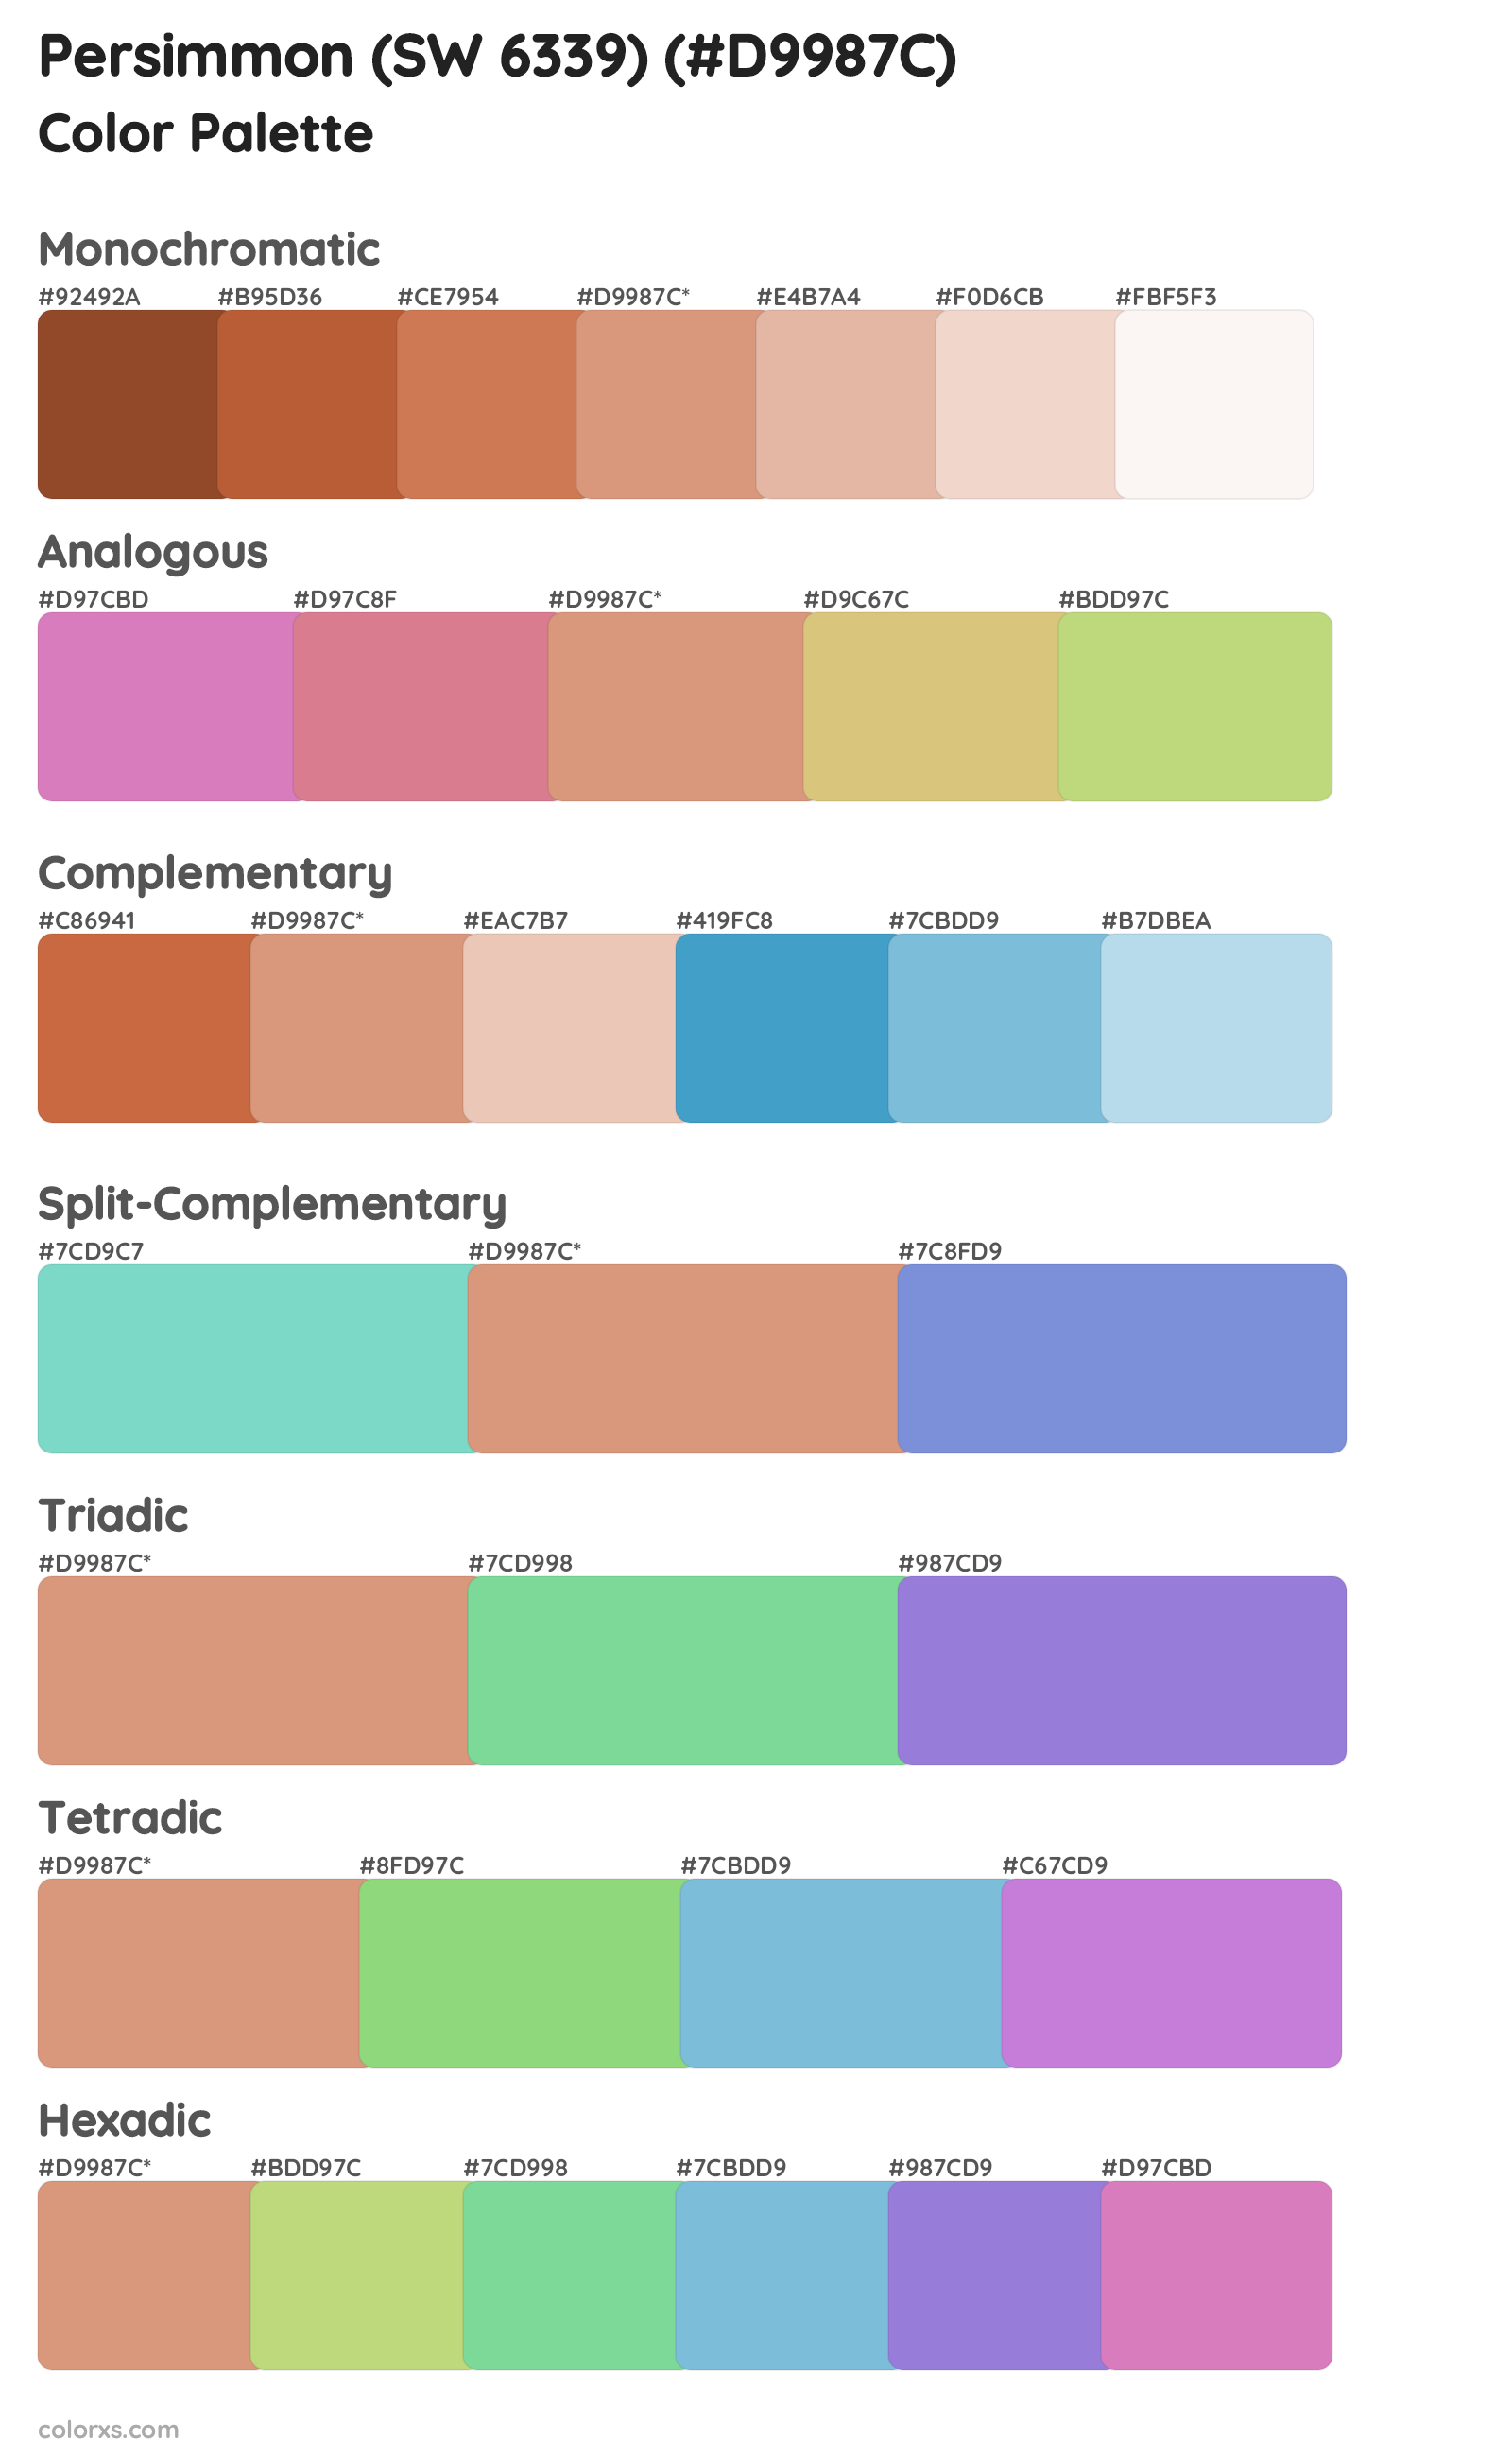 Persimmon (SW 6339) Color Scheme Palettes